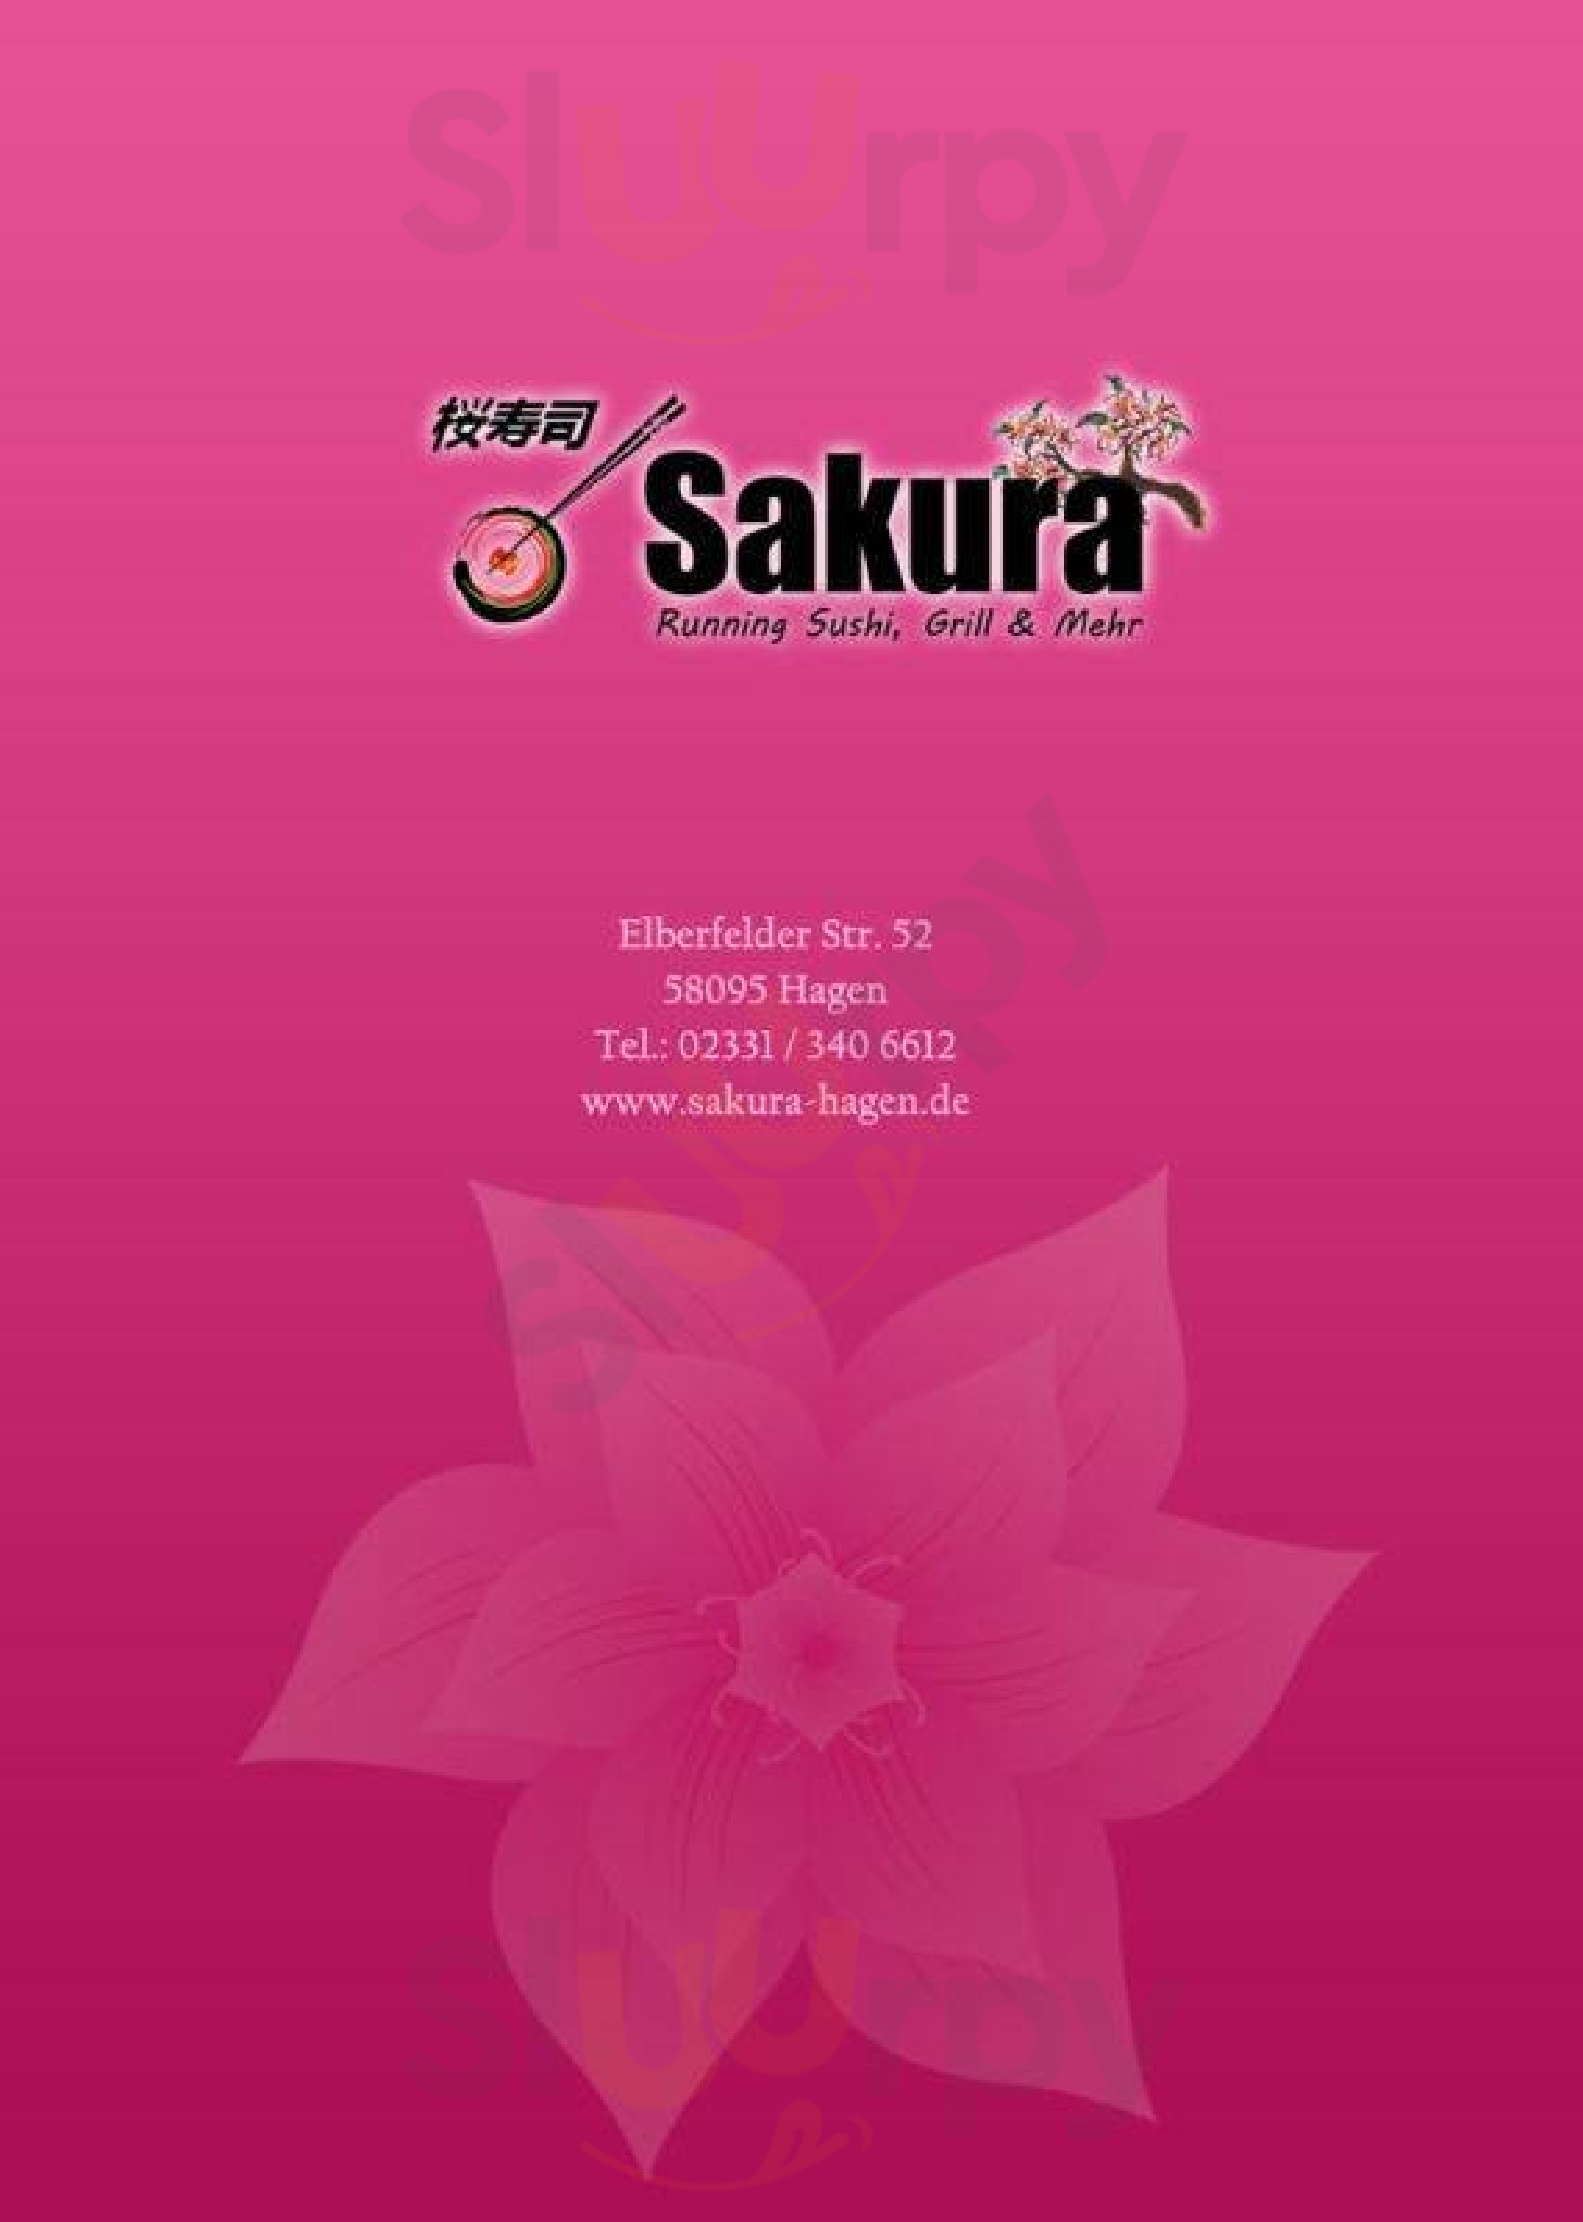 Sakura Hagen Menu - 1